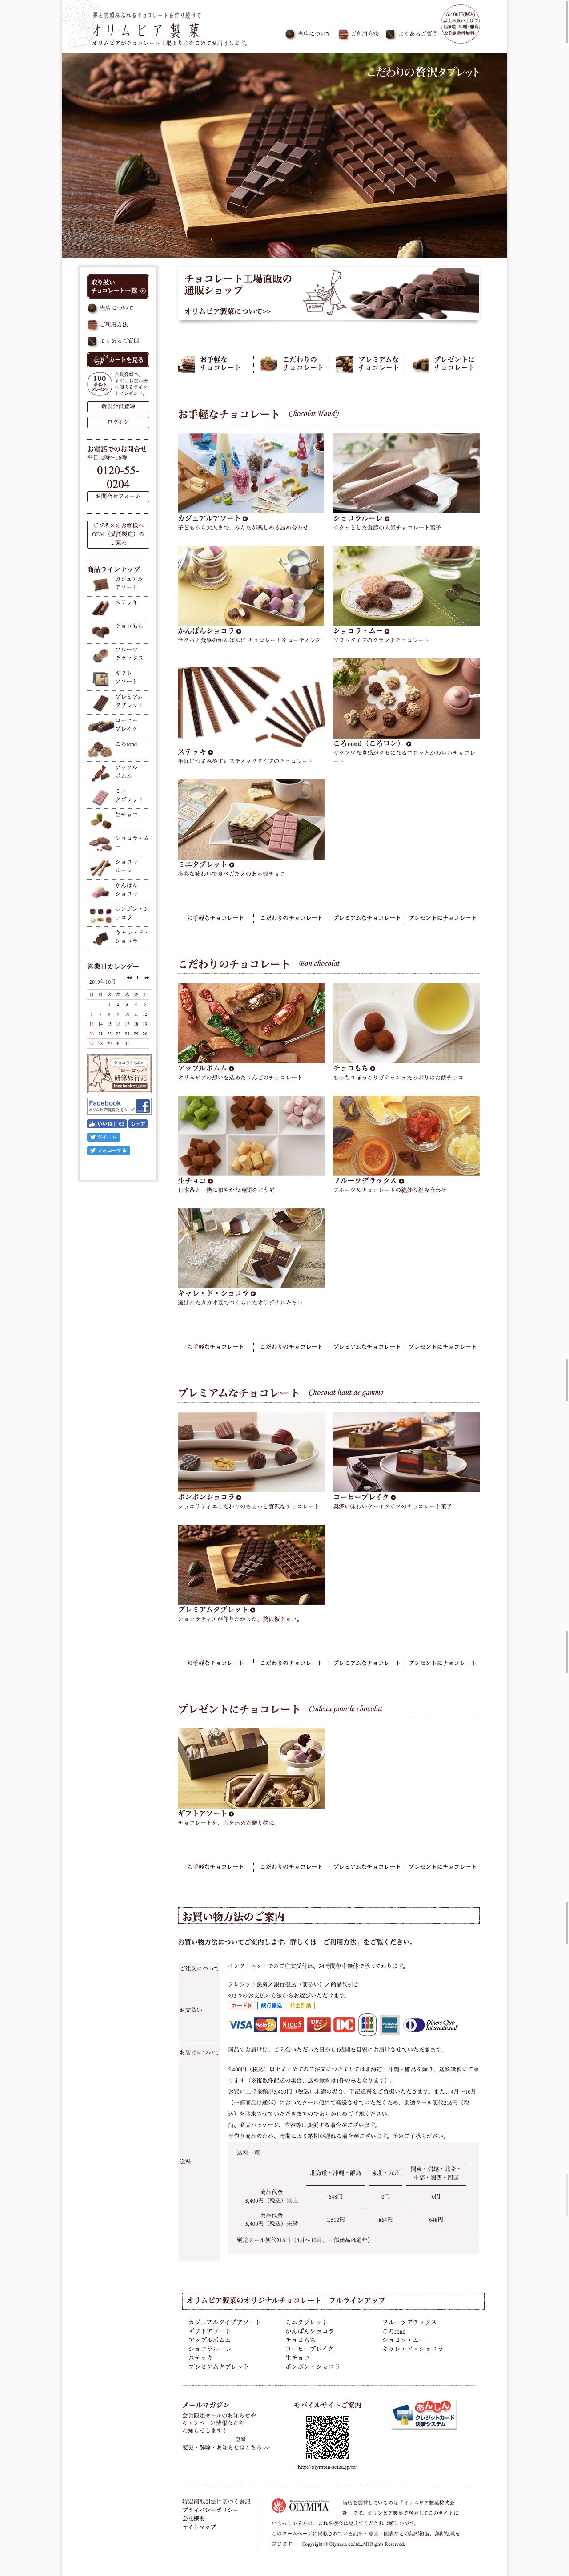 チョコレート工場直販の通販　オリムピア製菓のスクリーンショット - トップページ